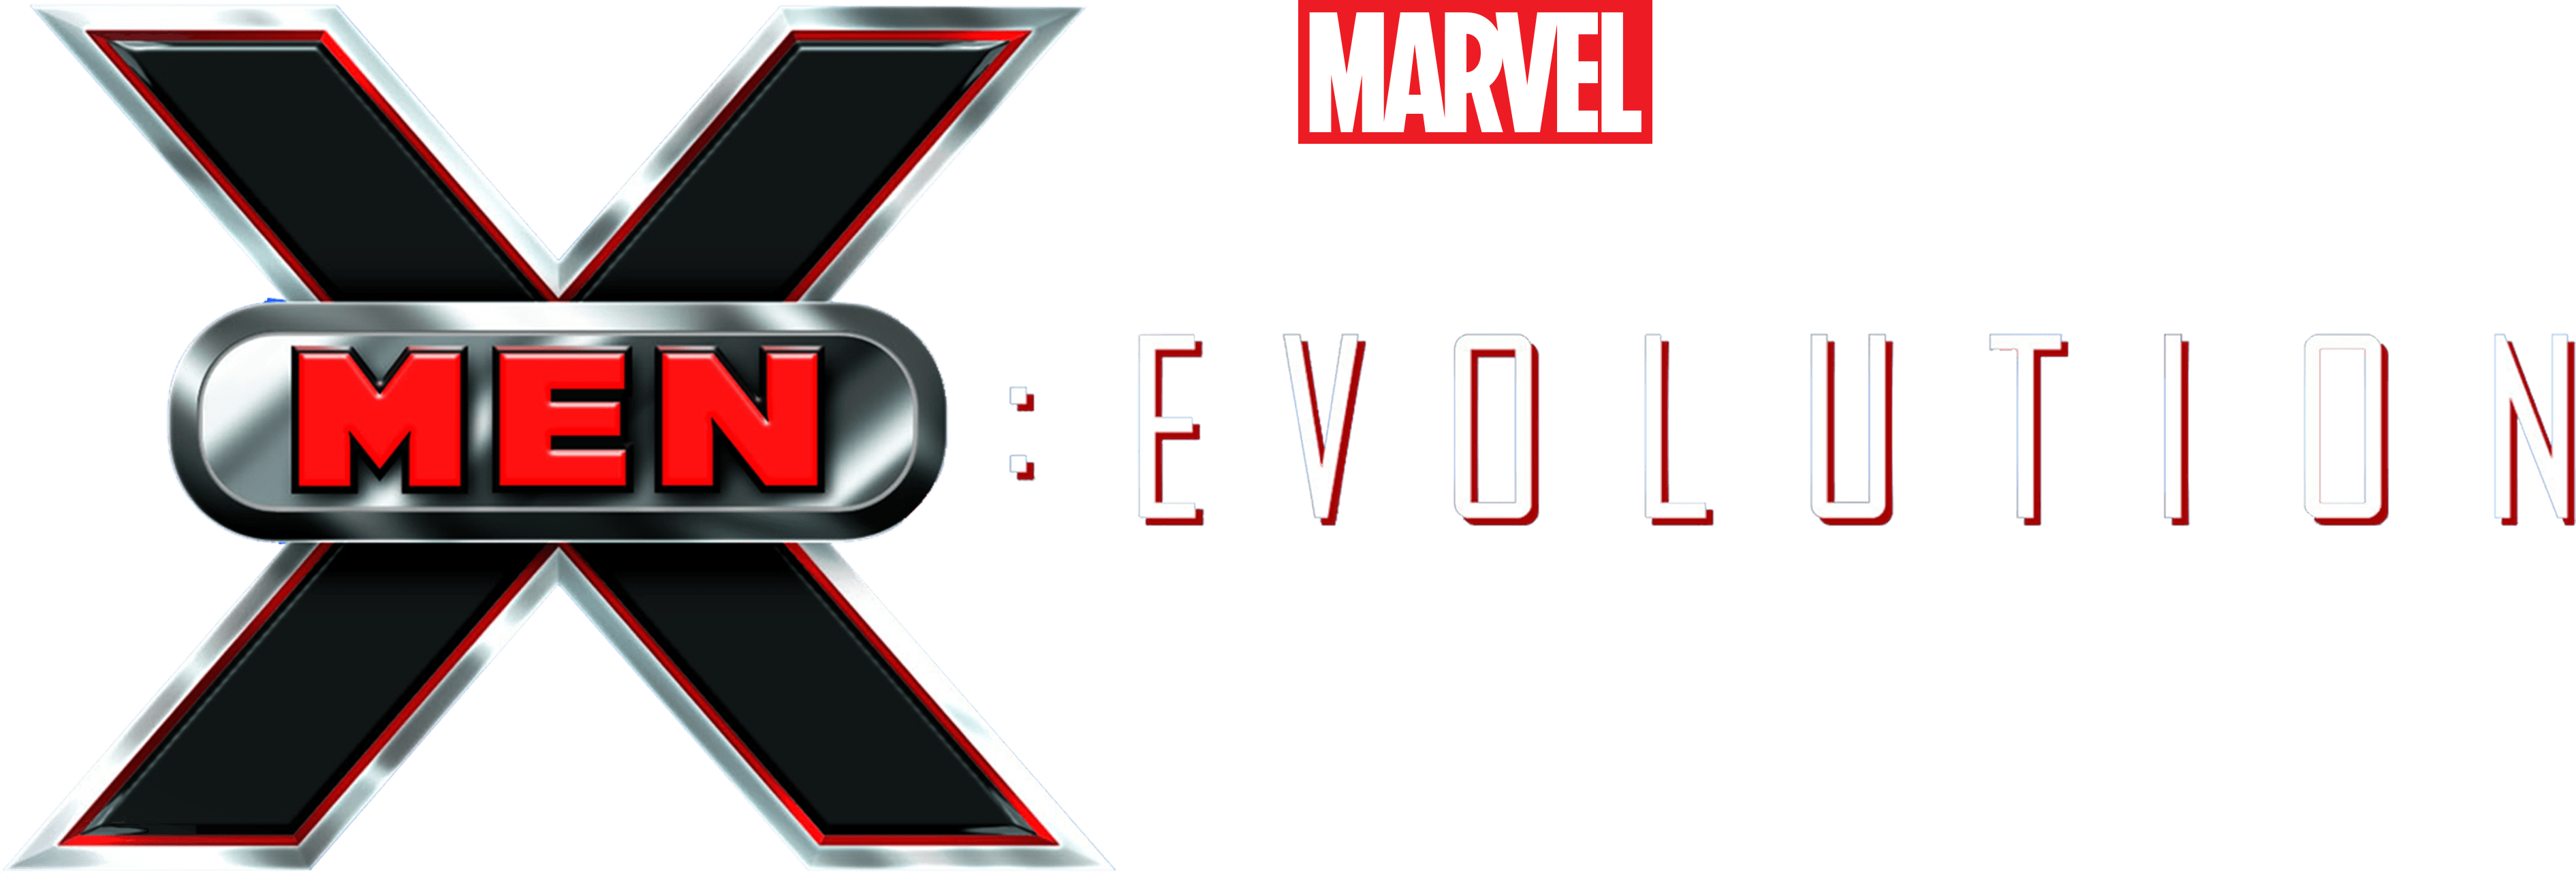 X-Men: Evolution logo